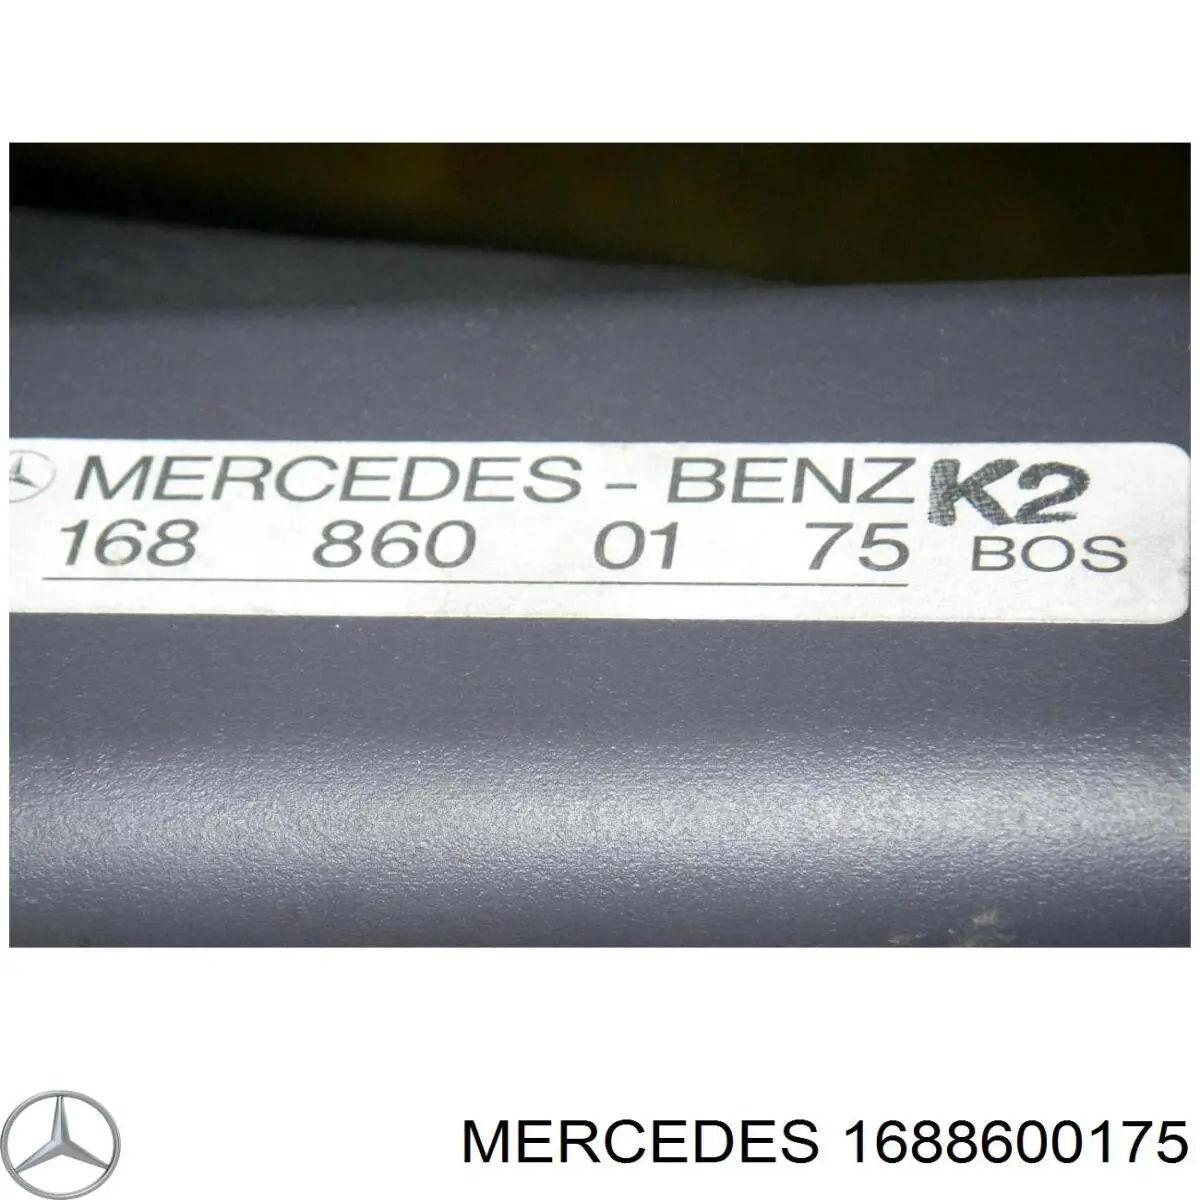 Estore da seção de bagagem para Mercedes A (W168)